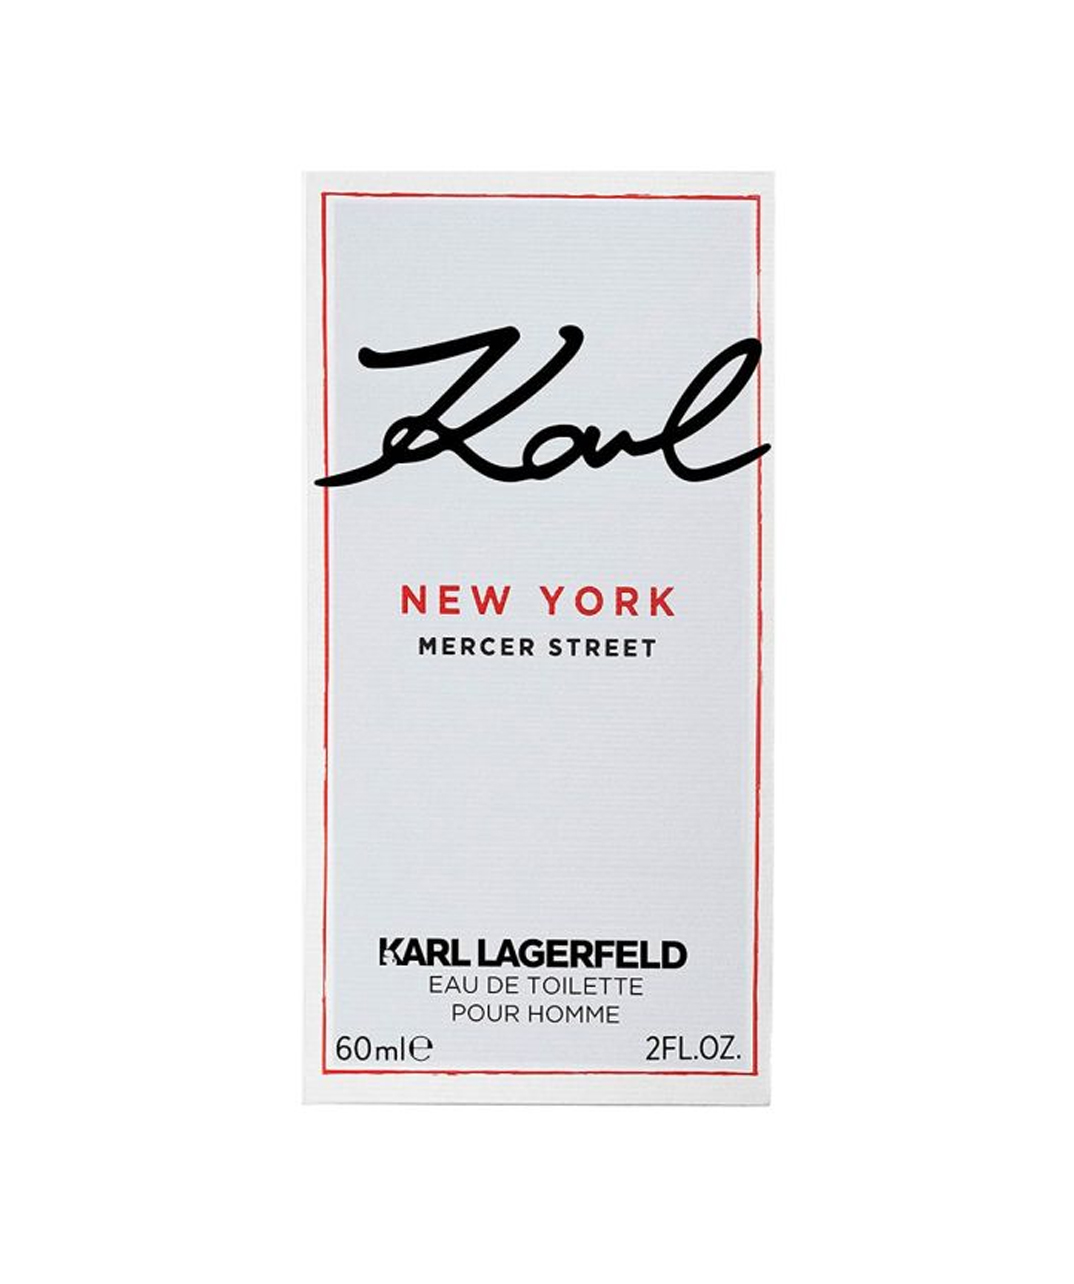 Perfume «Karl Lagerfeld» Mercer Street New York, for men, 60 ml